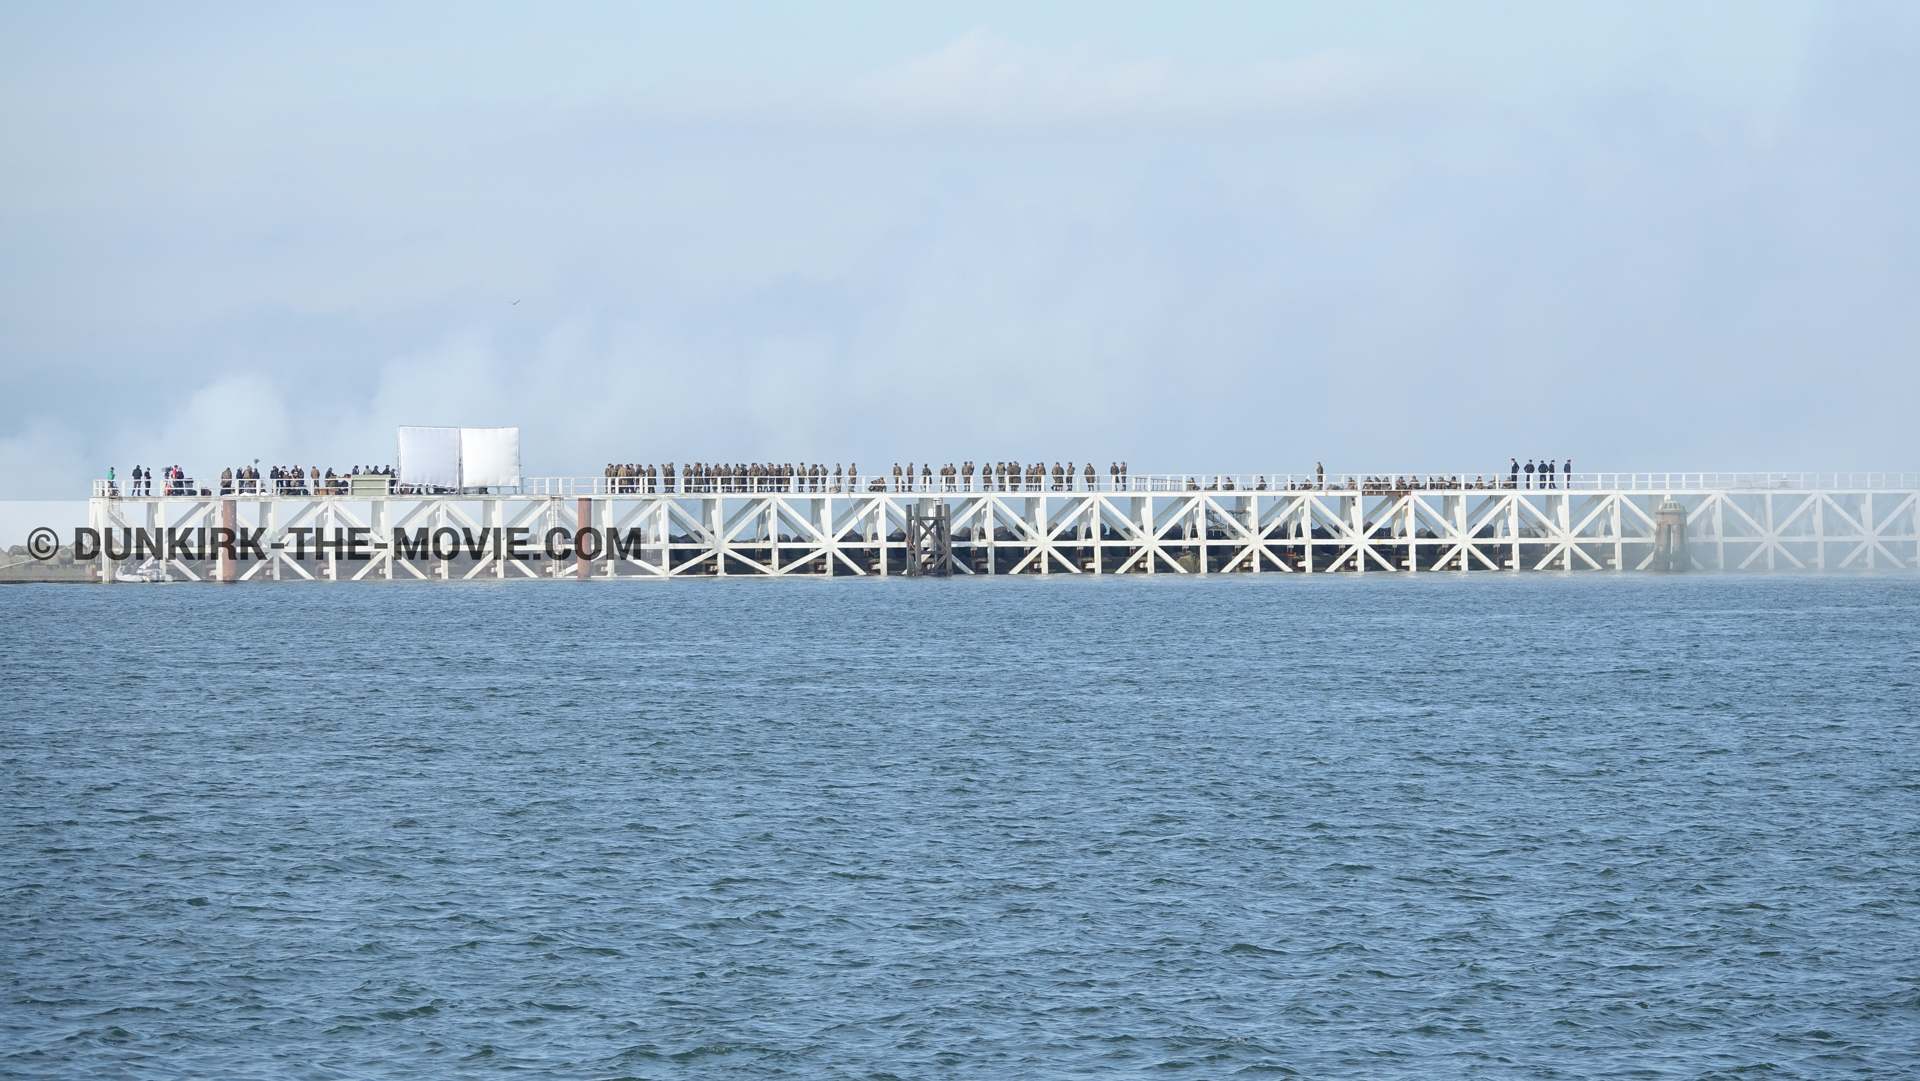 Fotos con humo blanco, muelle del ESTE, mares calma,  durante el rodaje de la película Dunkerque de Nolan